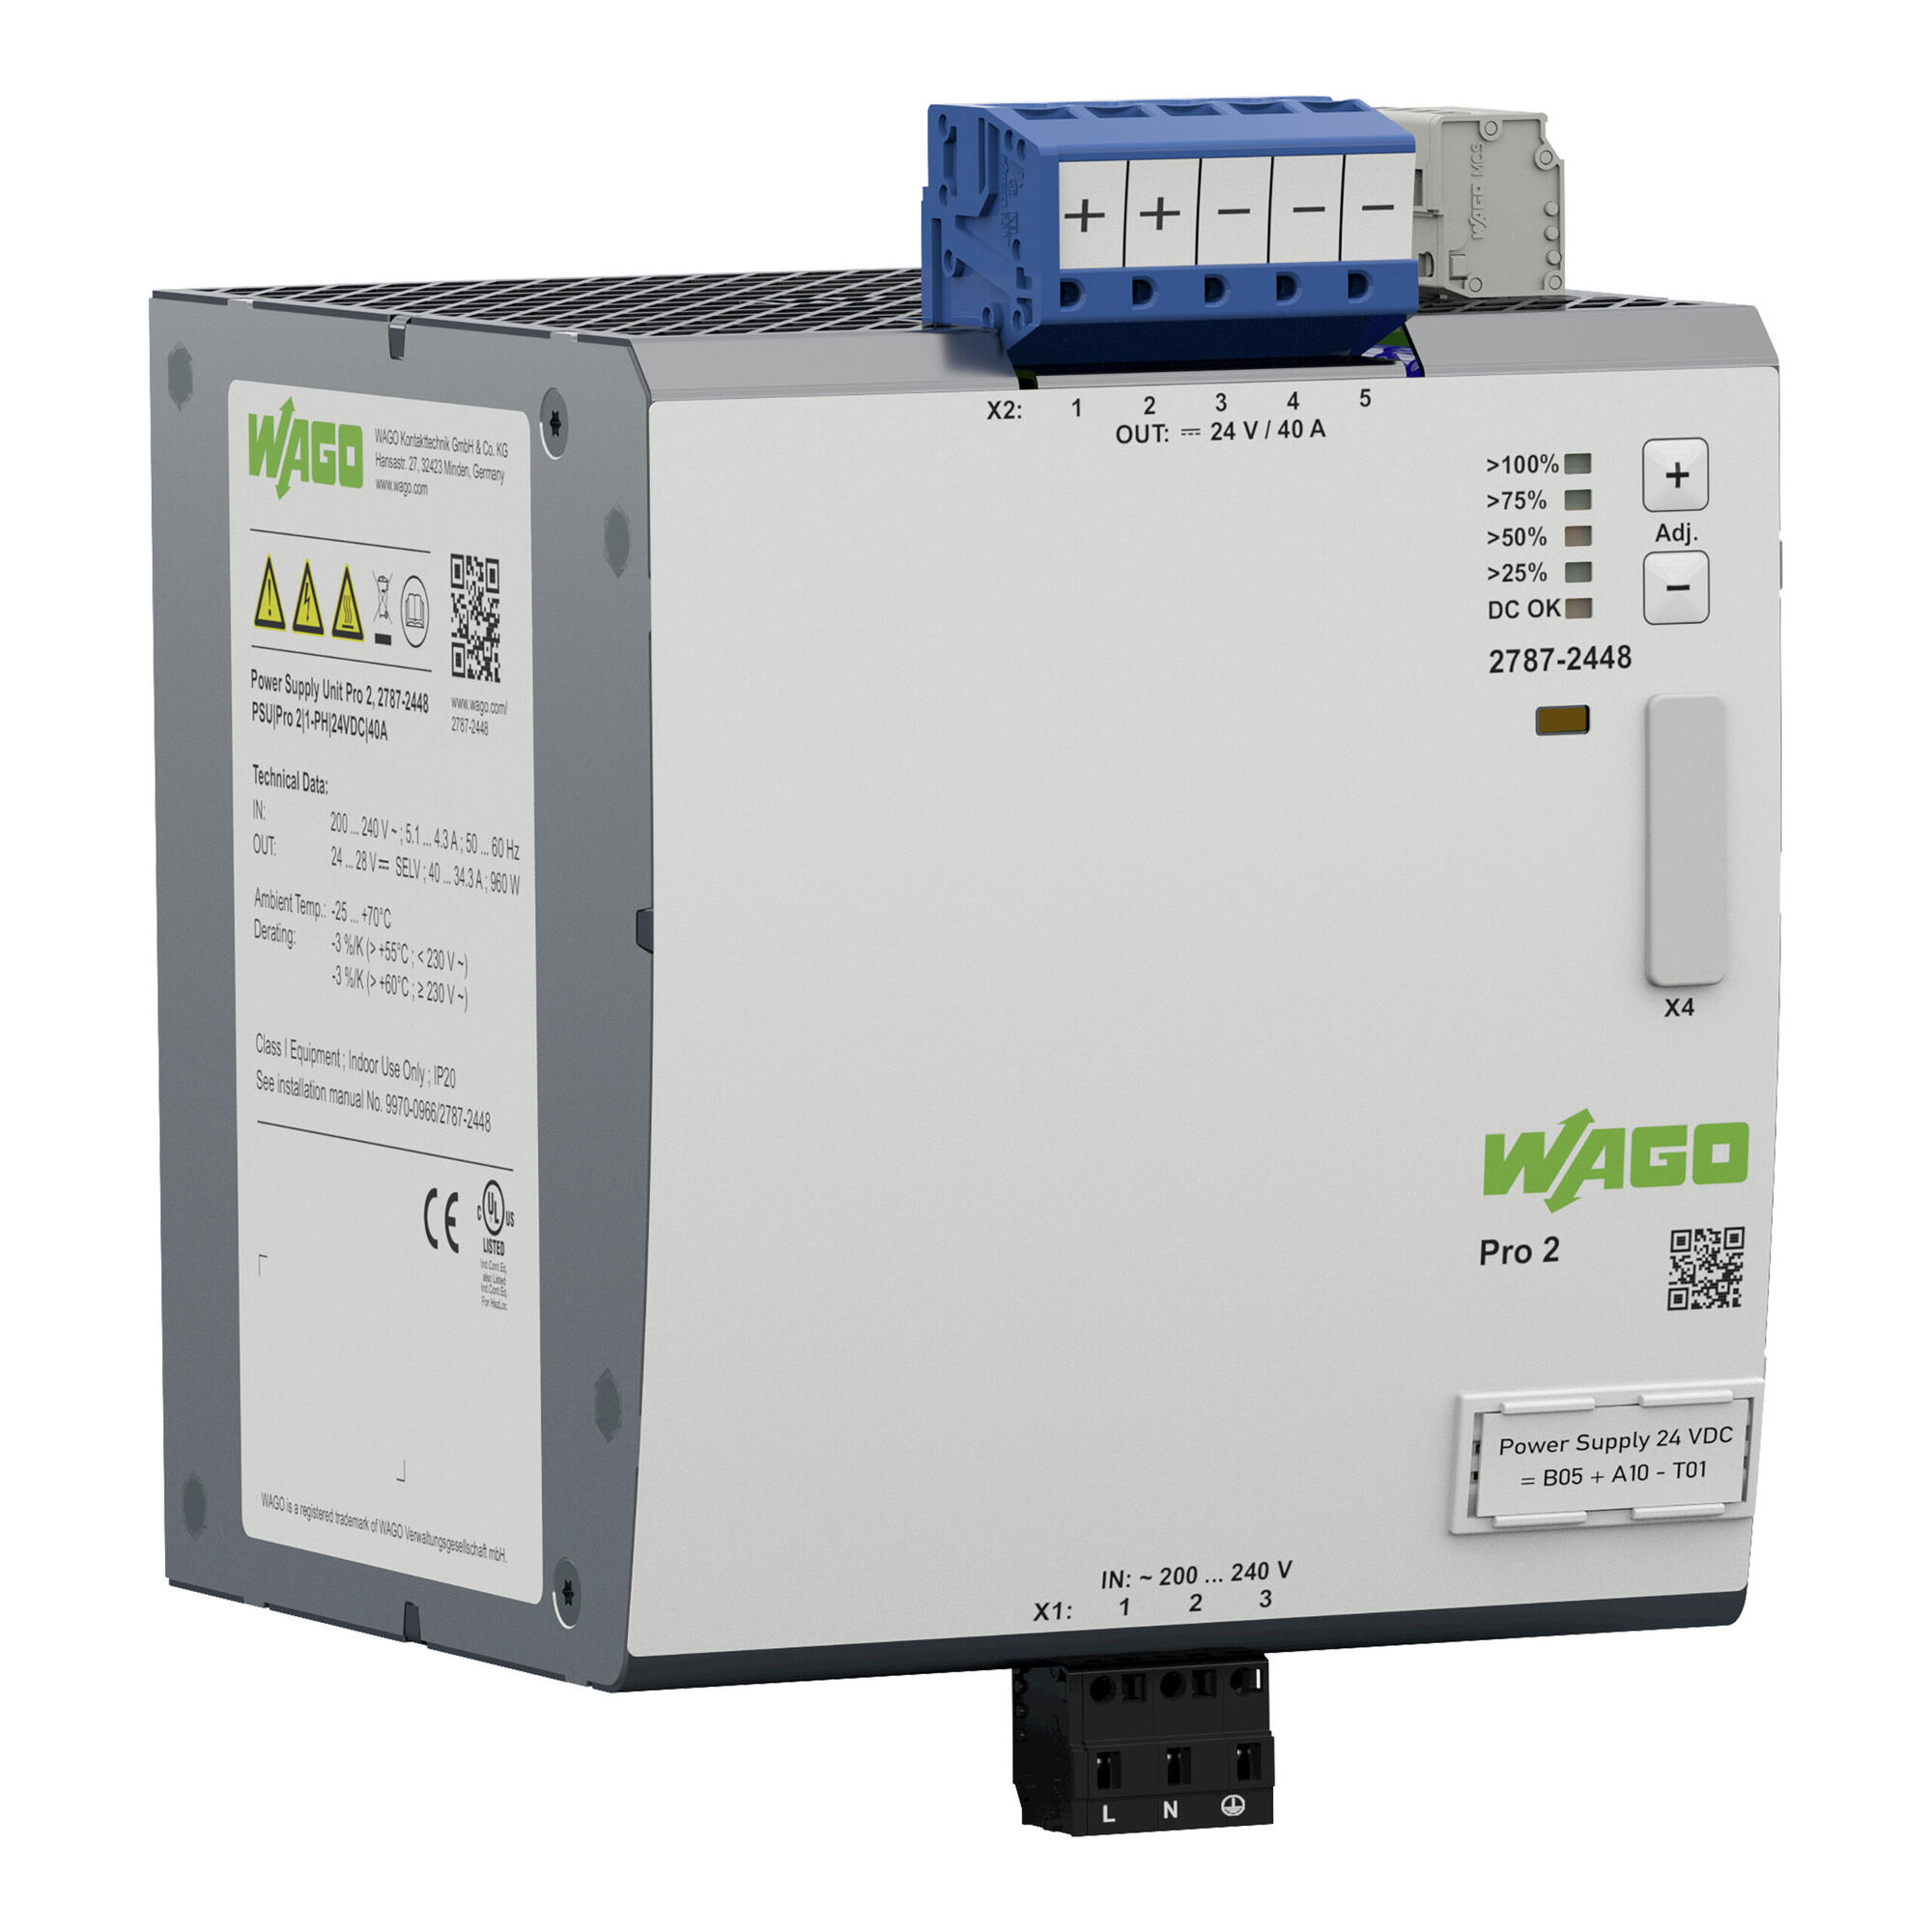 电源; Pro 2; 单相; 24 VDC输出电压; 40 A输出电流; TopBoost + PowerBoost; 通信能力; 输入电压范围：200 … 240 VAC